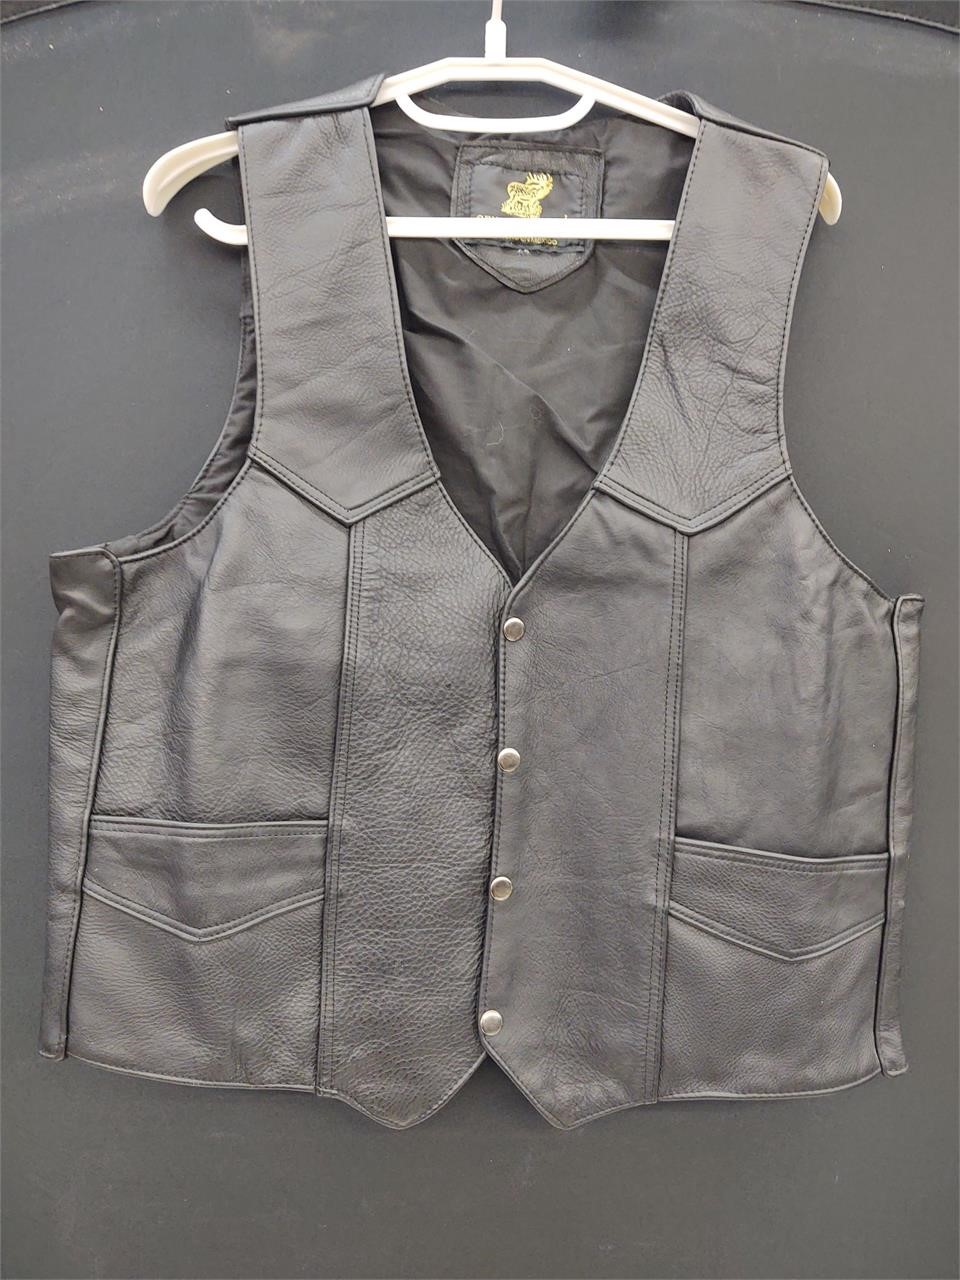 Leather Vest size Large